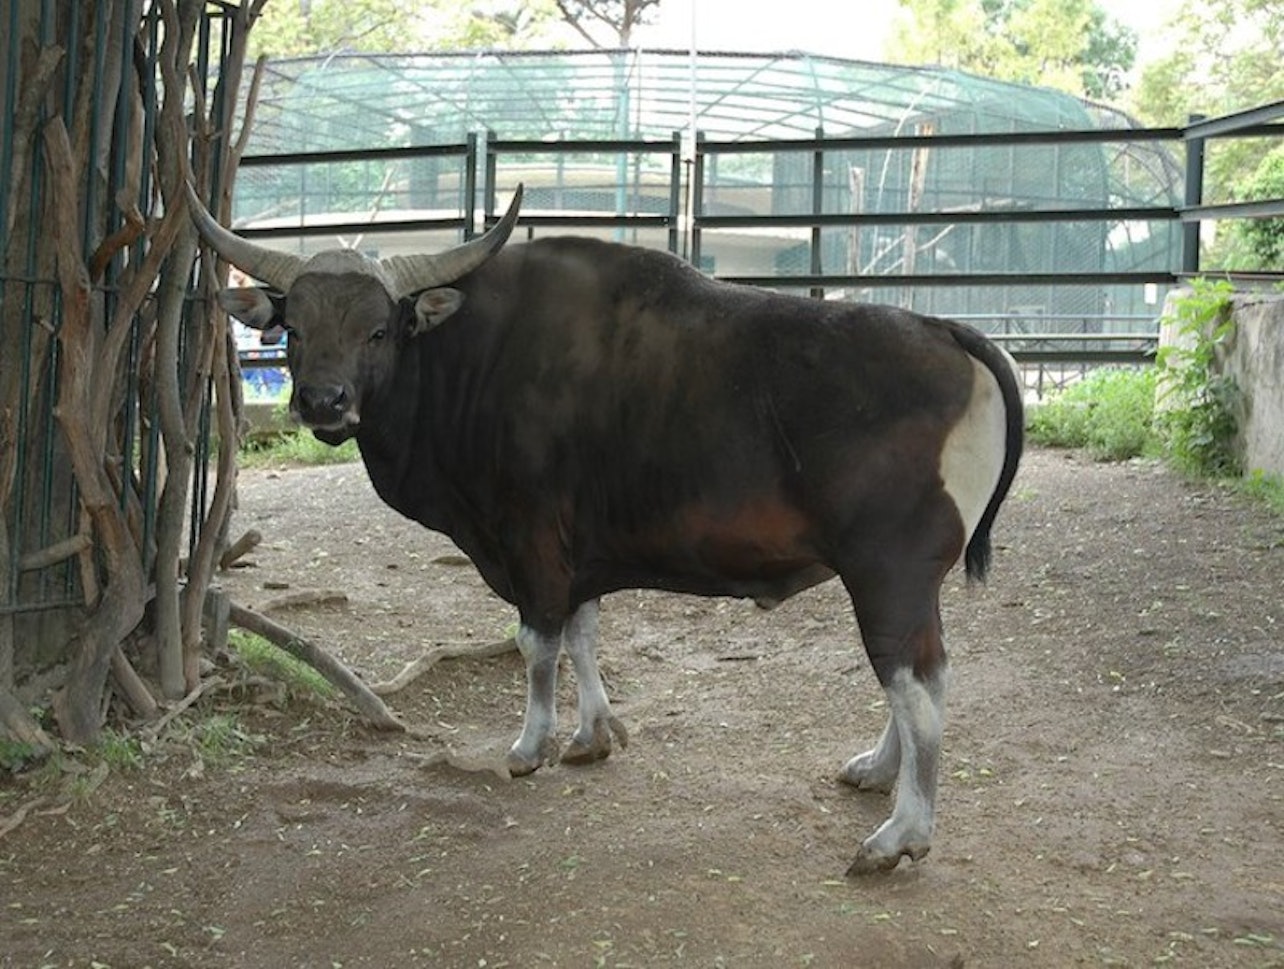 Bioparco: el zoo de Roma - Alojamientos en Roma